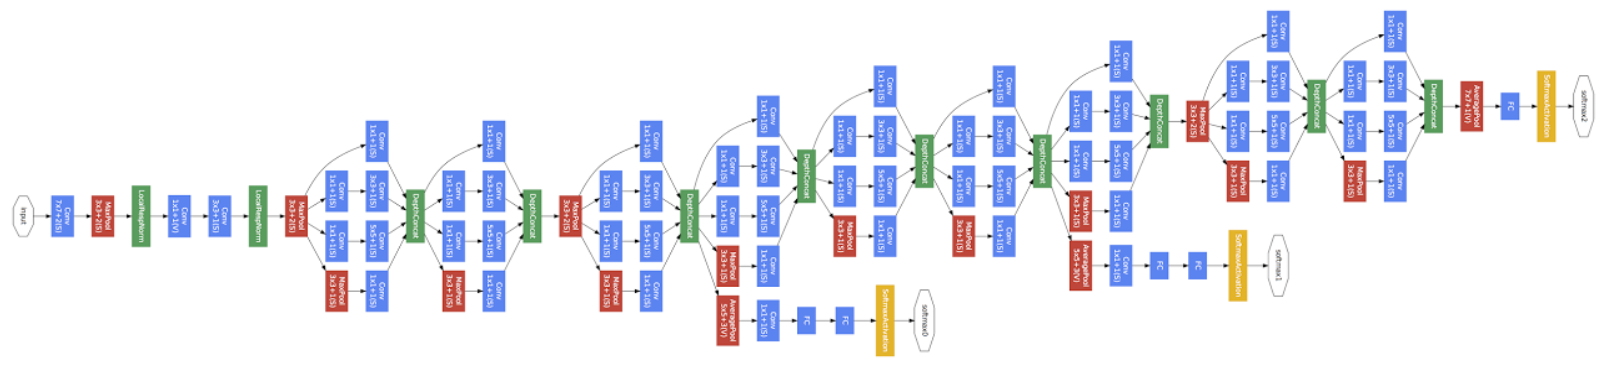 GoogLeNet Inception model